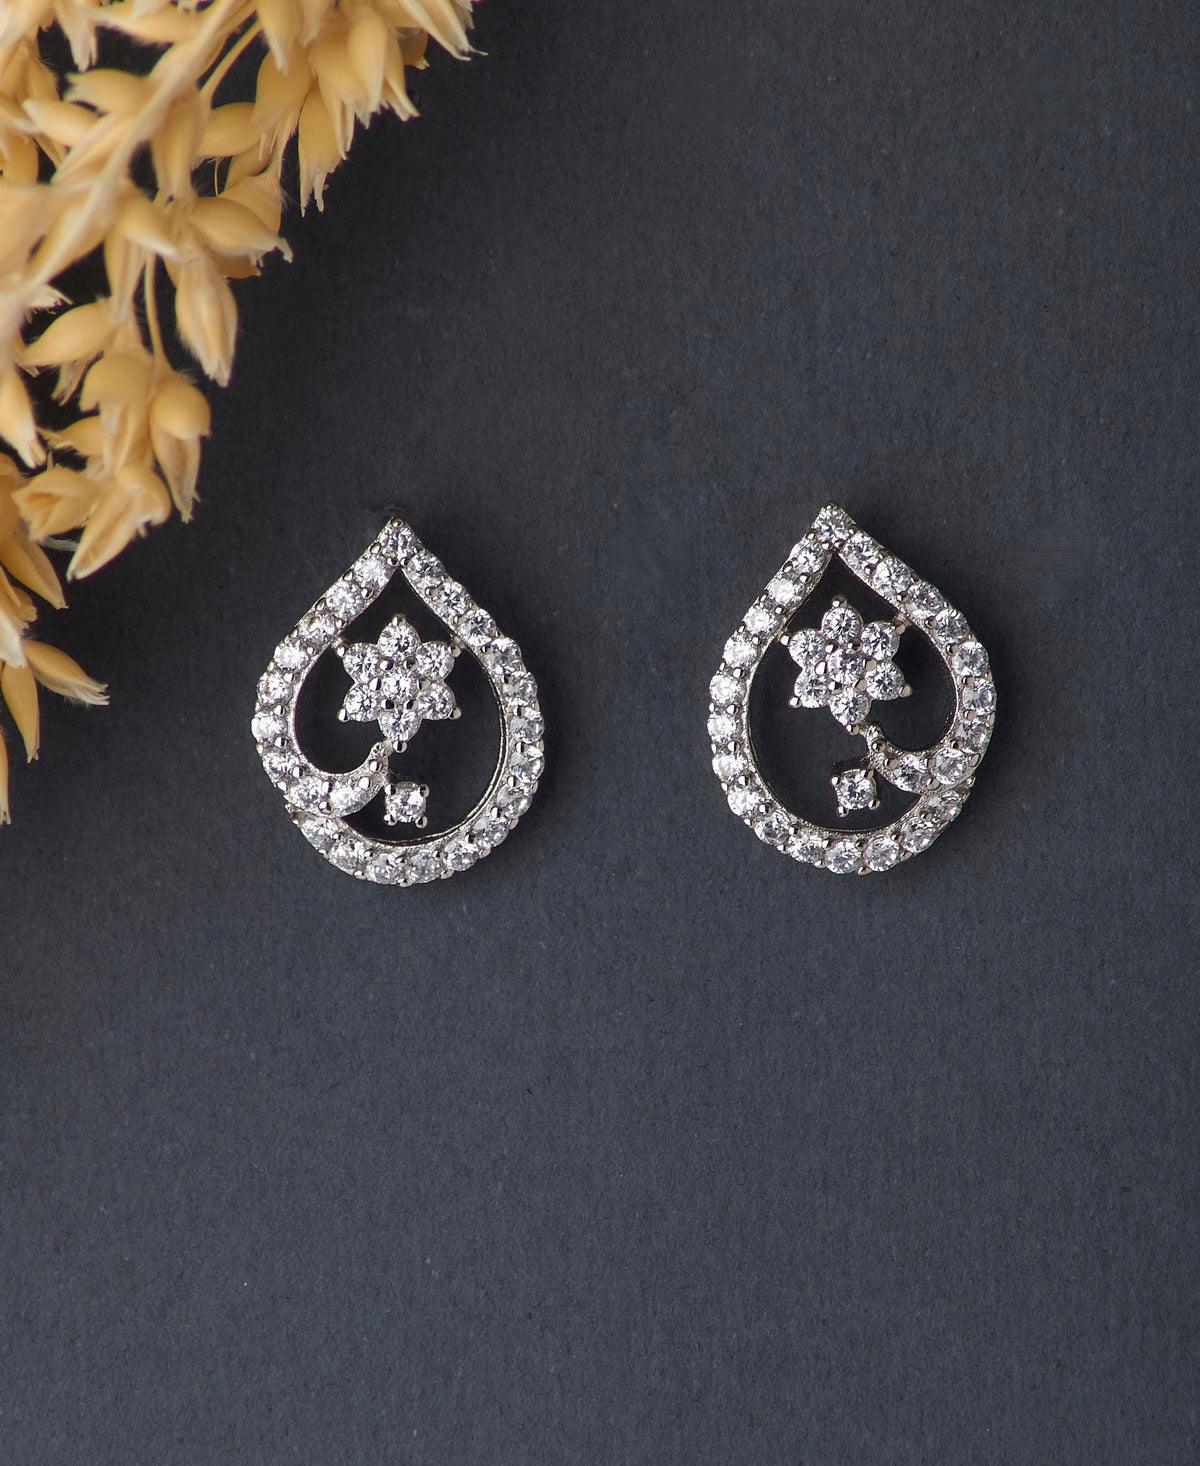 Dainty Stone Studded Silver Flower Earrings - Chandrani Pearls